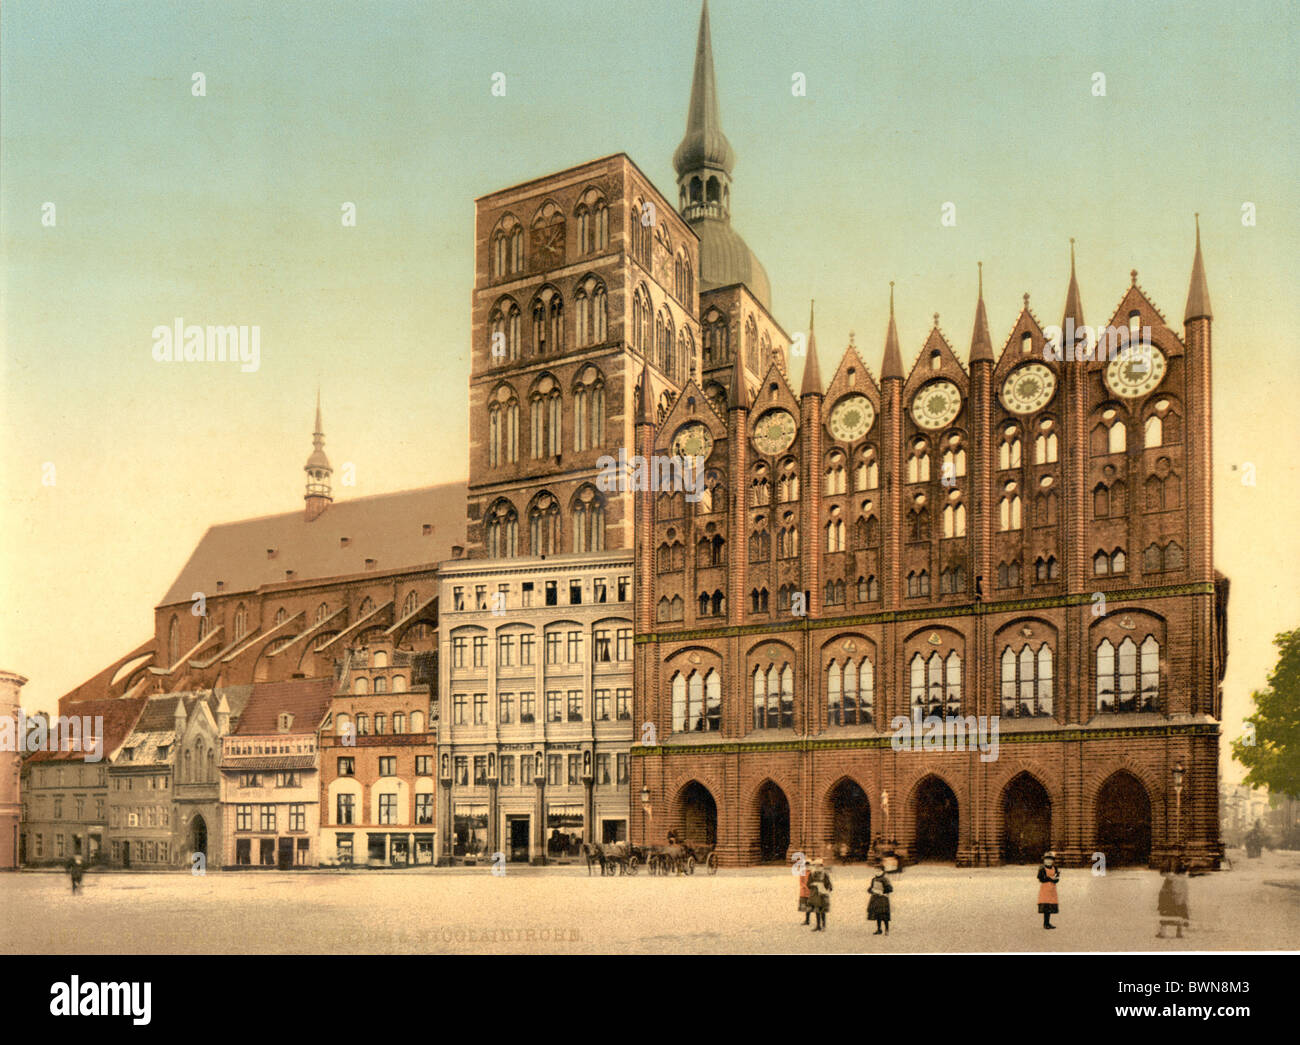 Stralsund, Allemagne Europe occidentale de l'Empire allemand de 1900 Photochrom historique histoire de l'hôtel de ville historique Banque D'Images